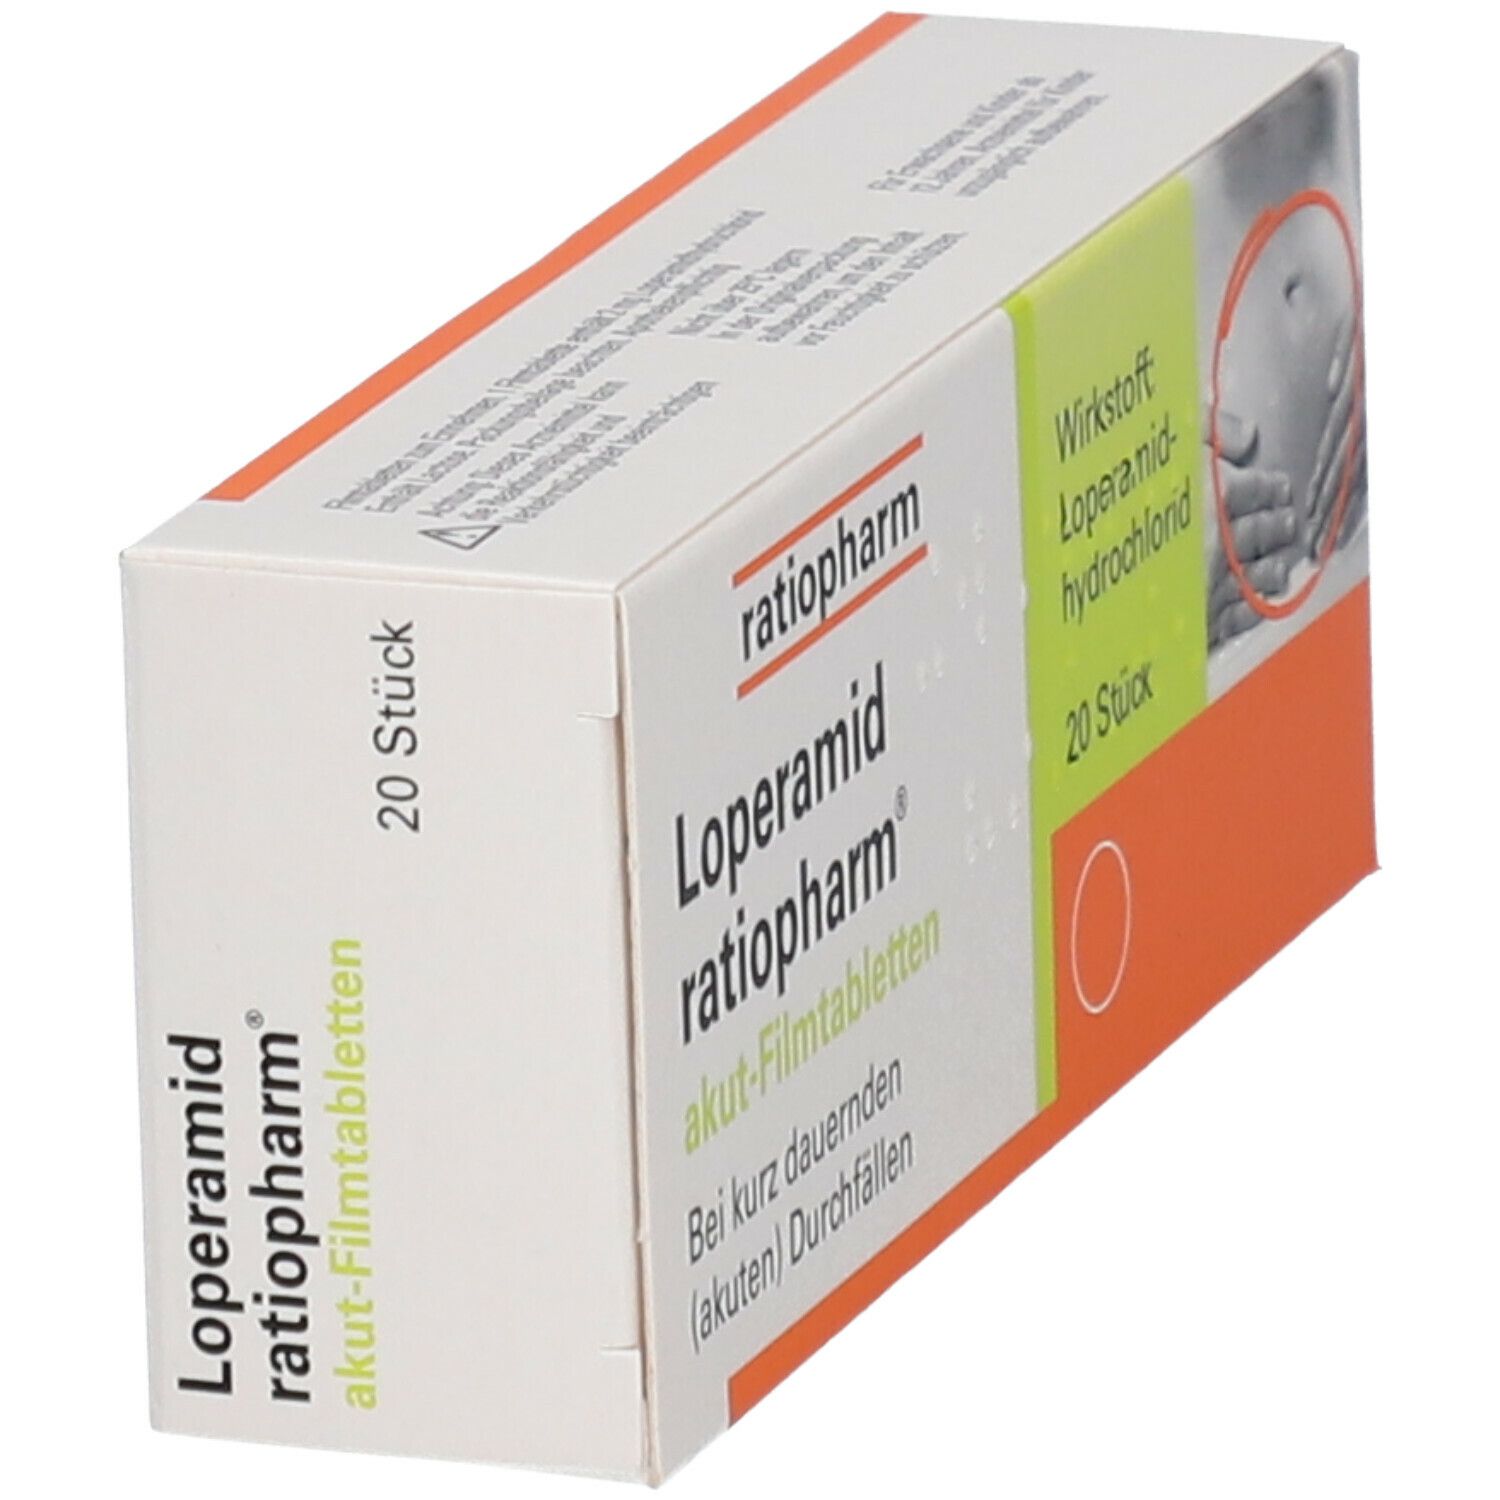 Loperamid ratiopharm® akut-Filmtabletten